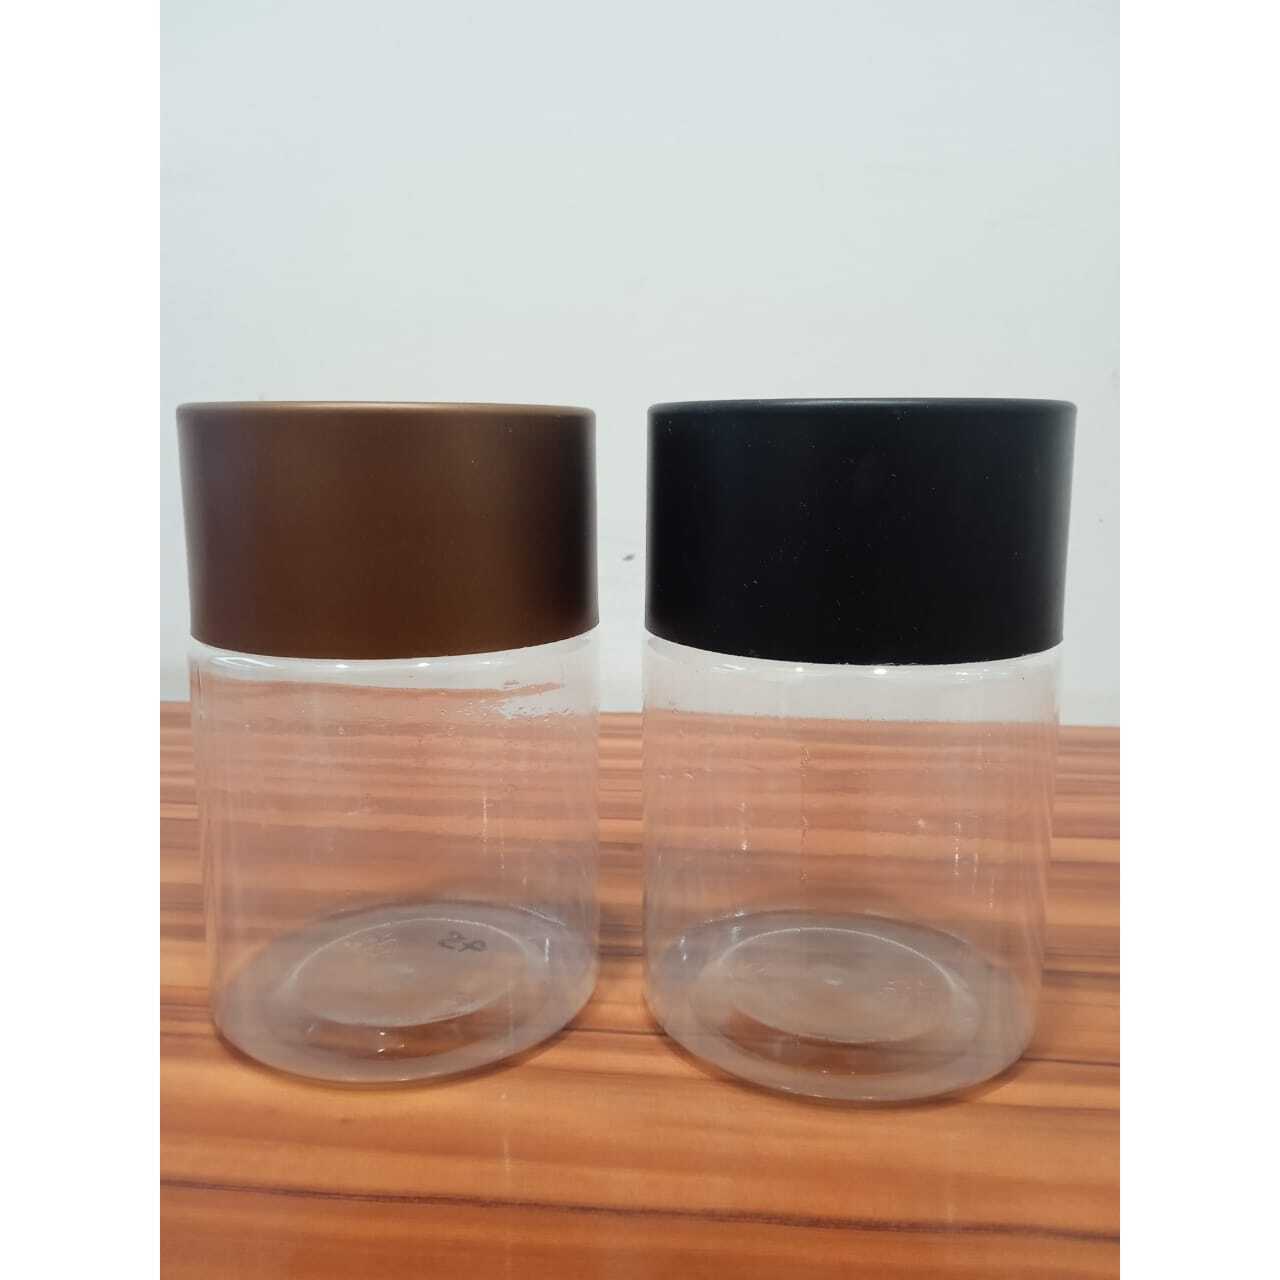 Edible and Non Edible Plastic Jars